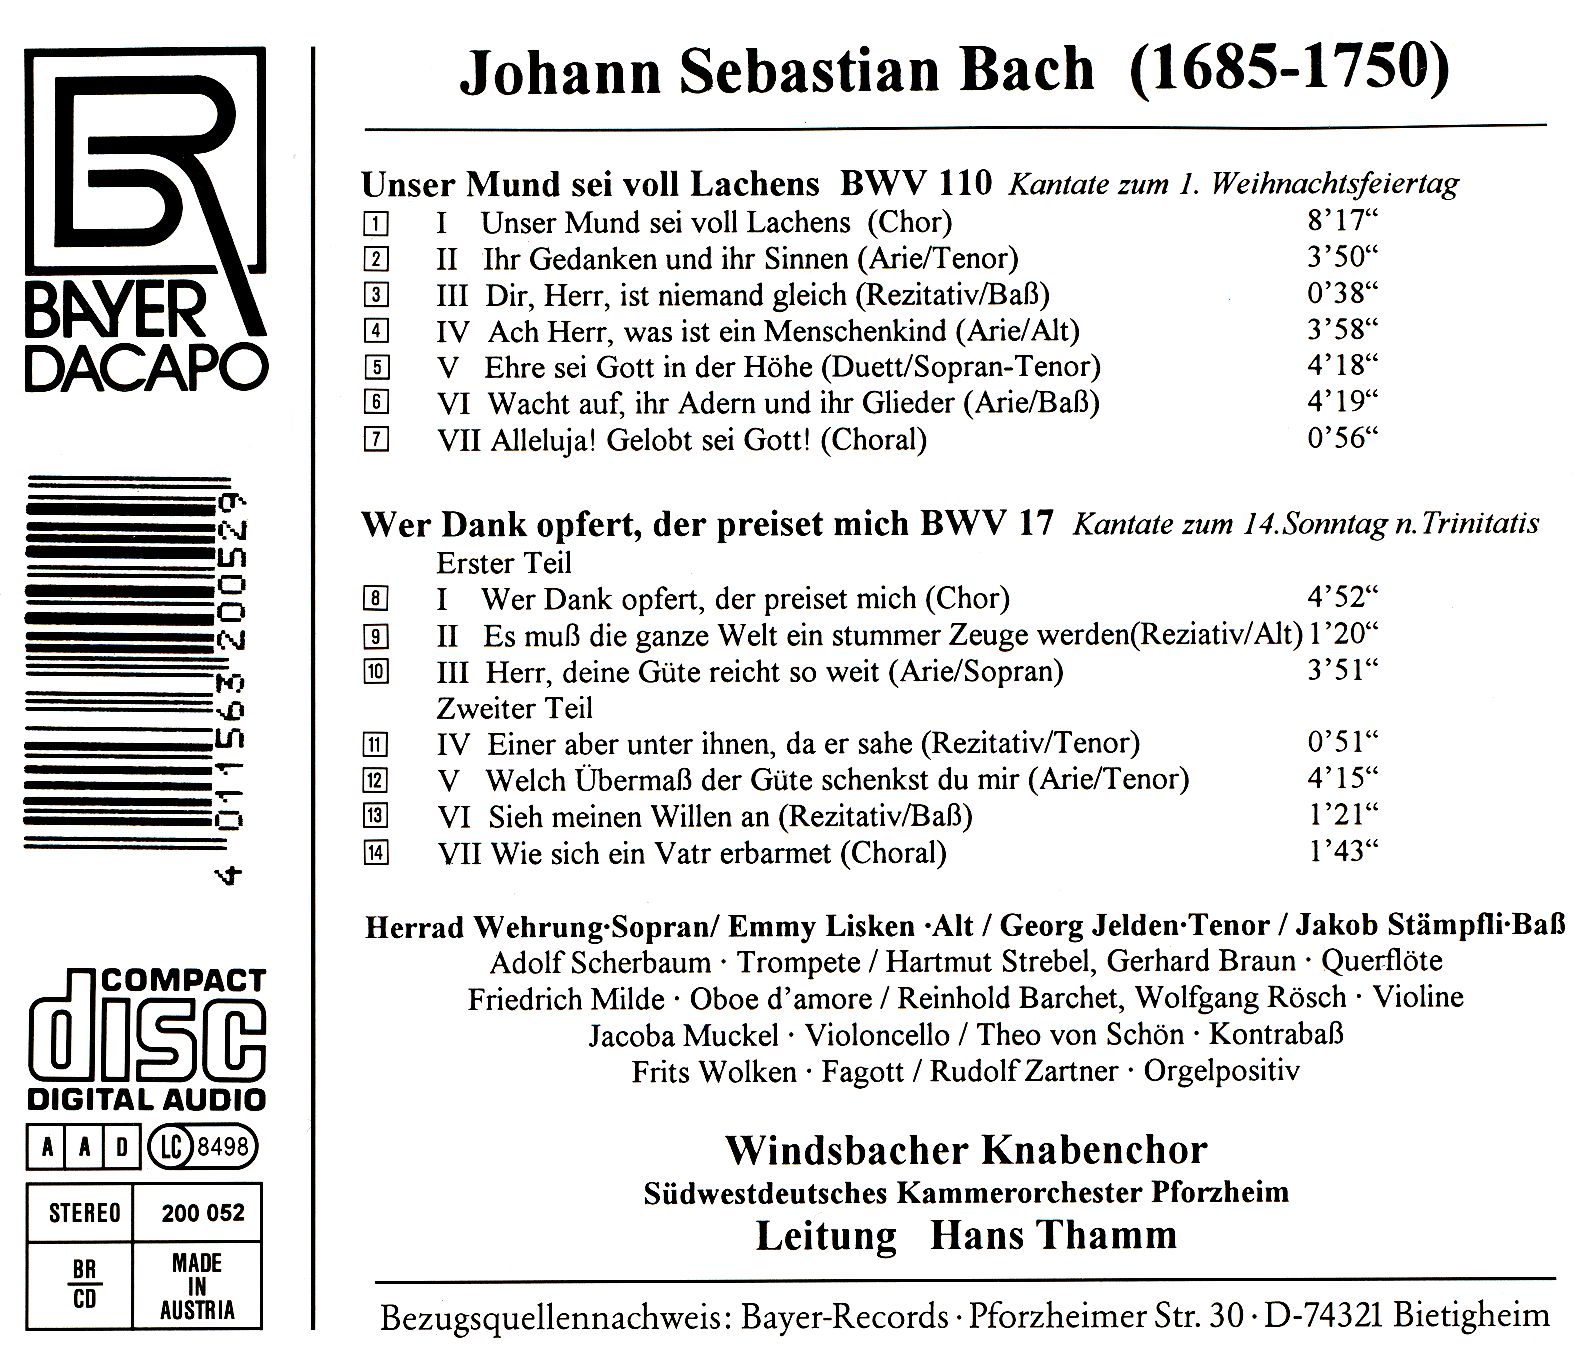 Windsbacher Knabenchor - Johann Sebastian Bach